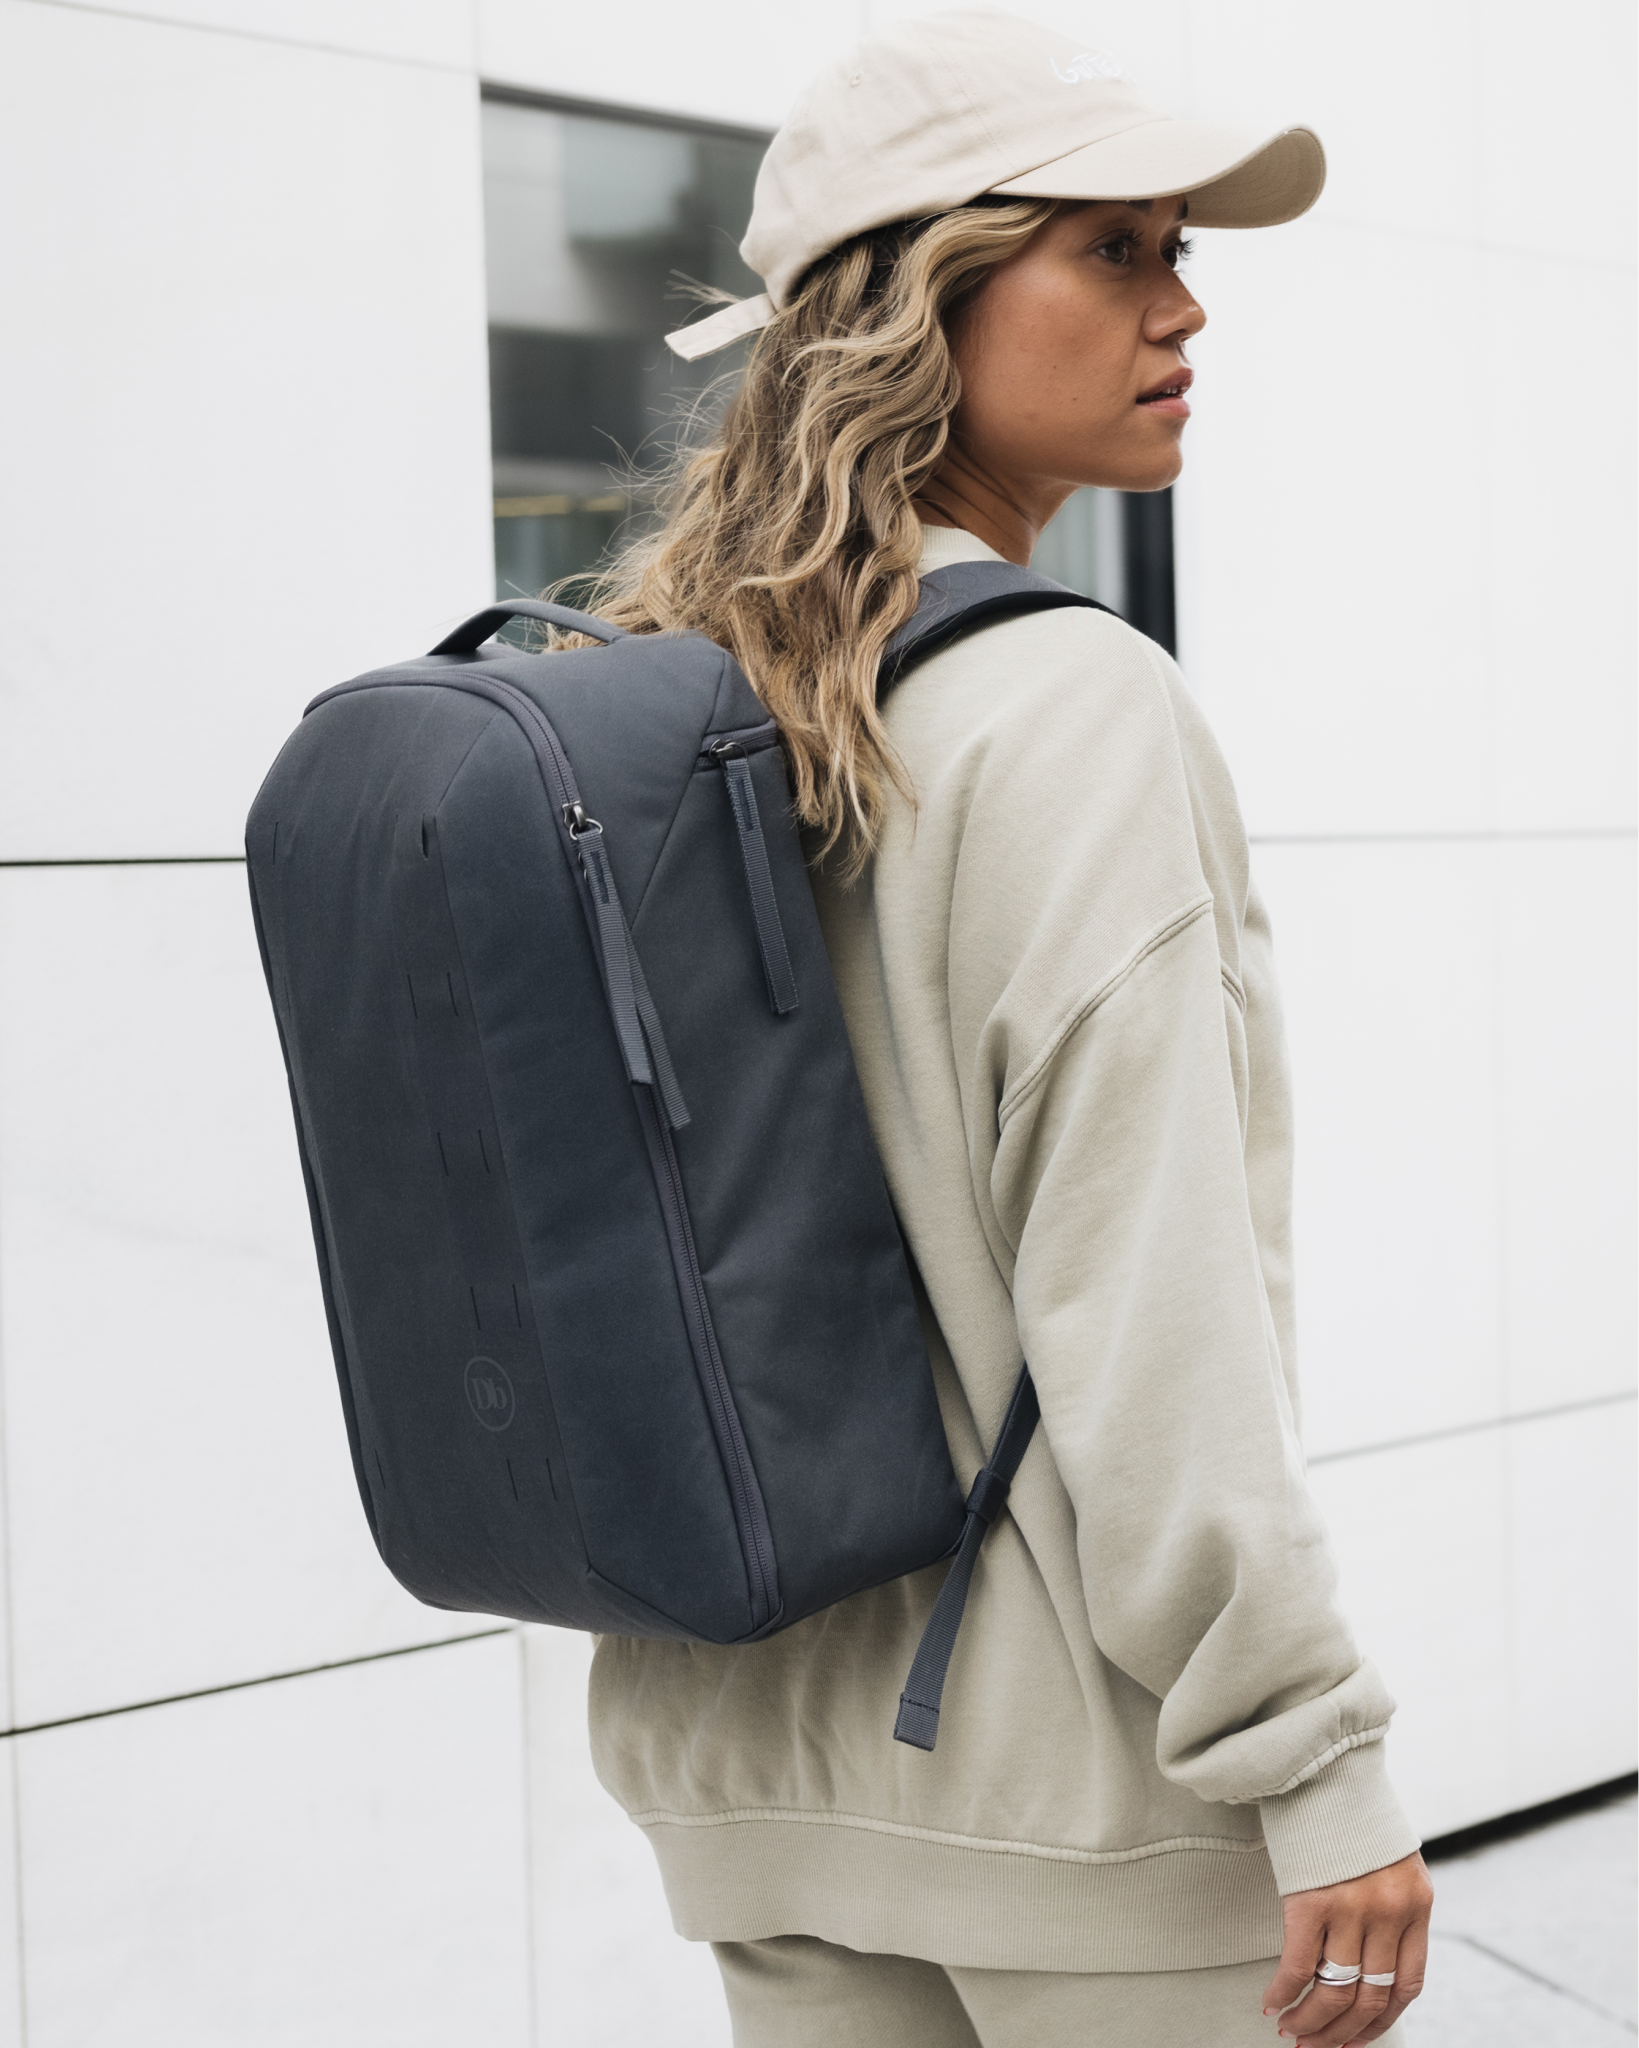 Freya Backpack 22L